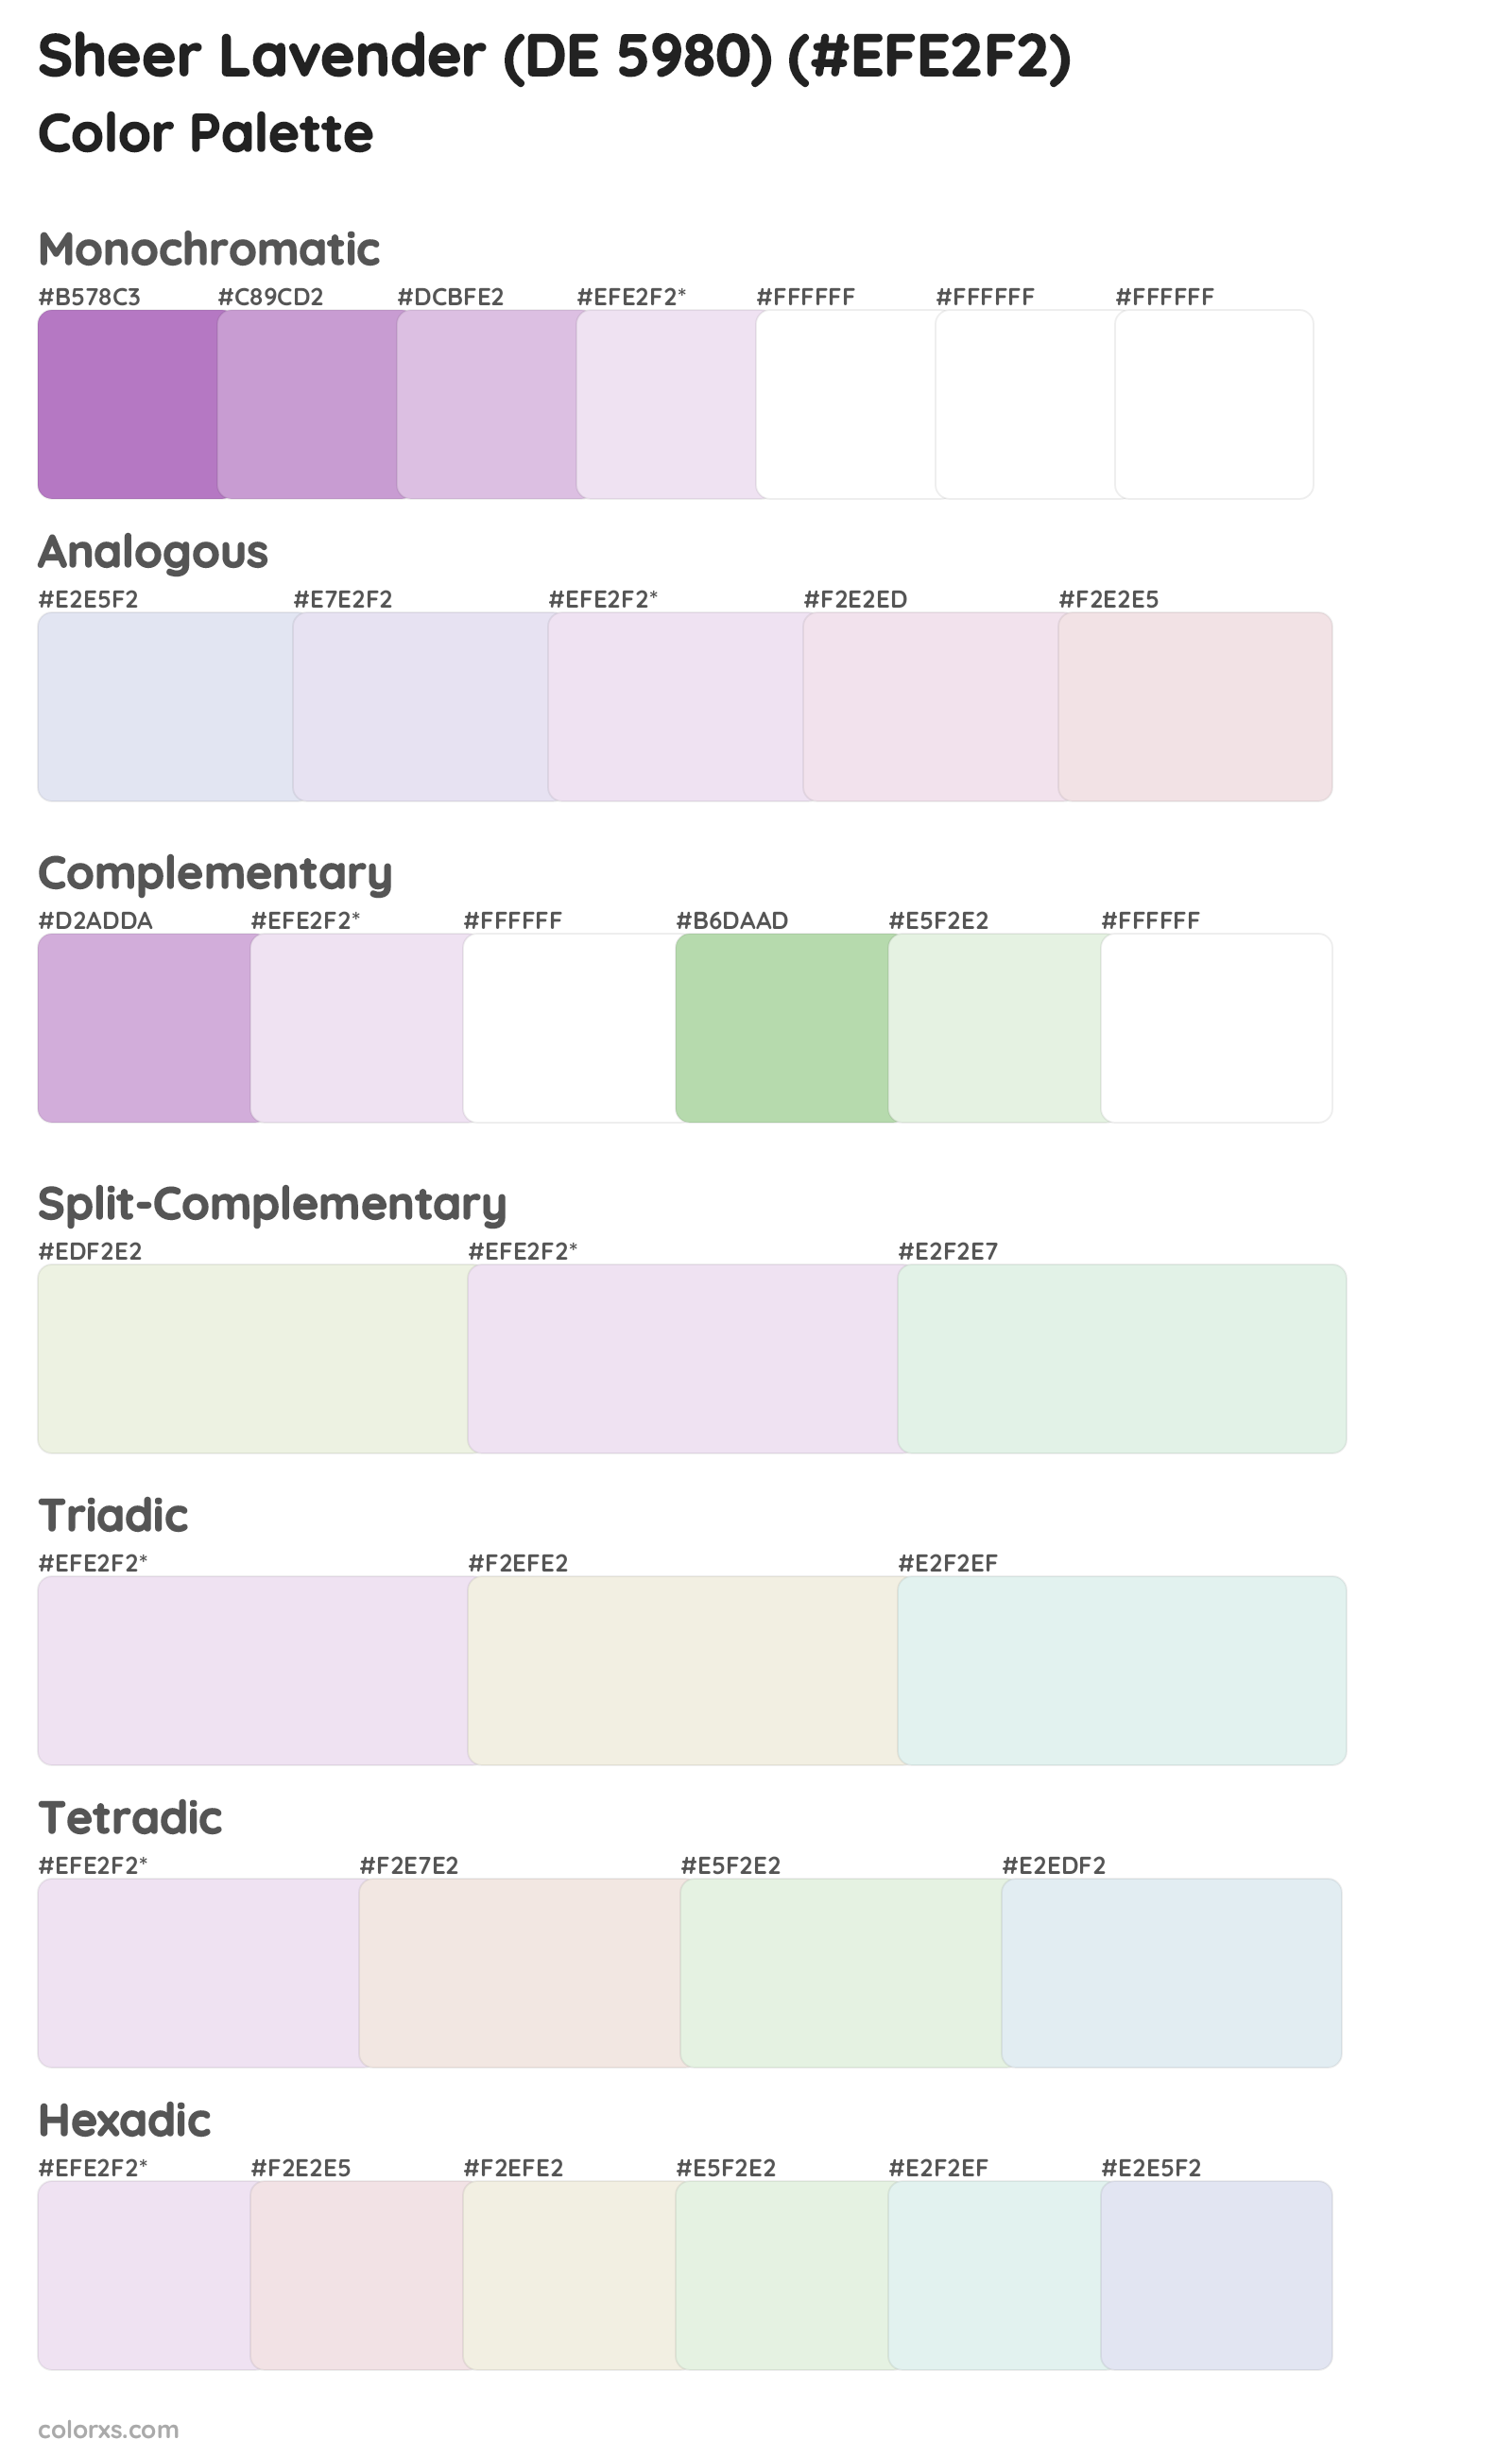 Sheer Lavender (DE 5980) Color Scheme Palettes